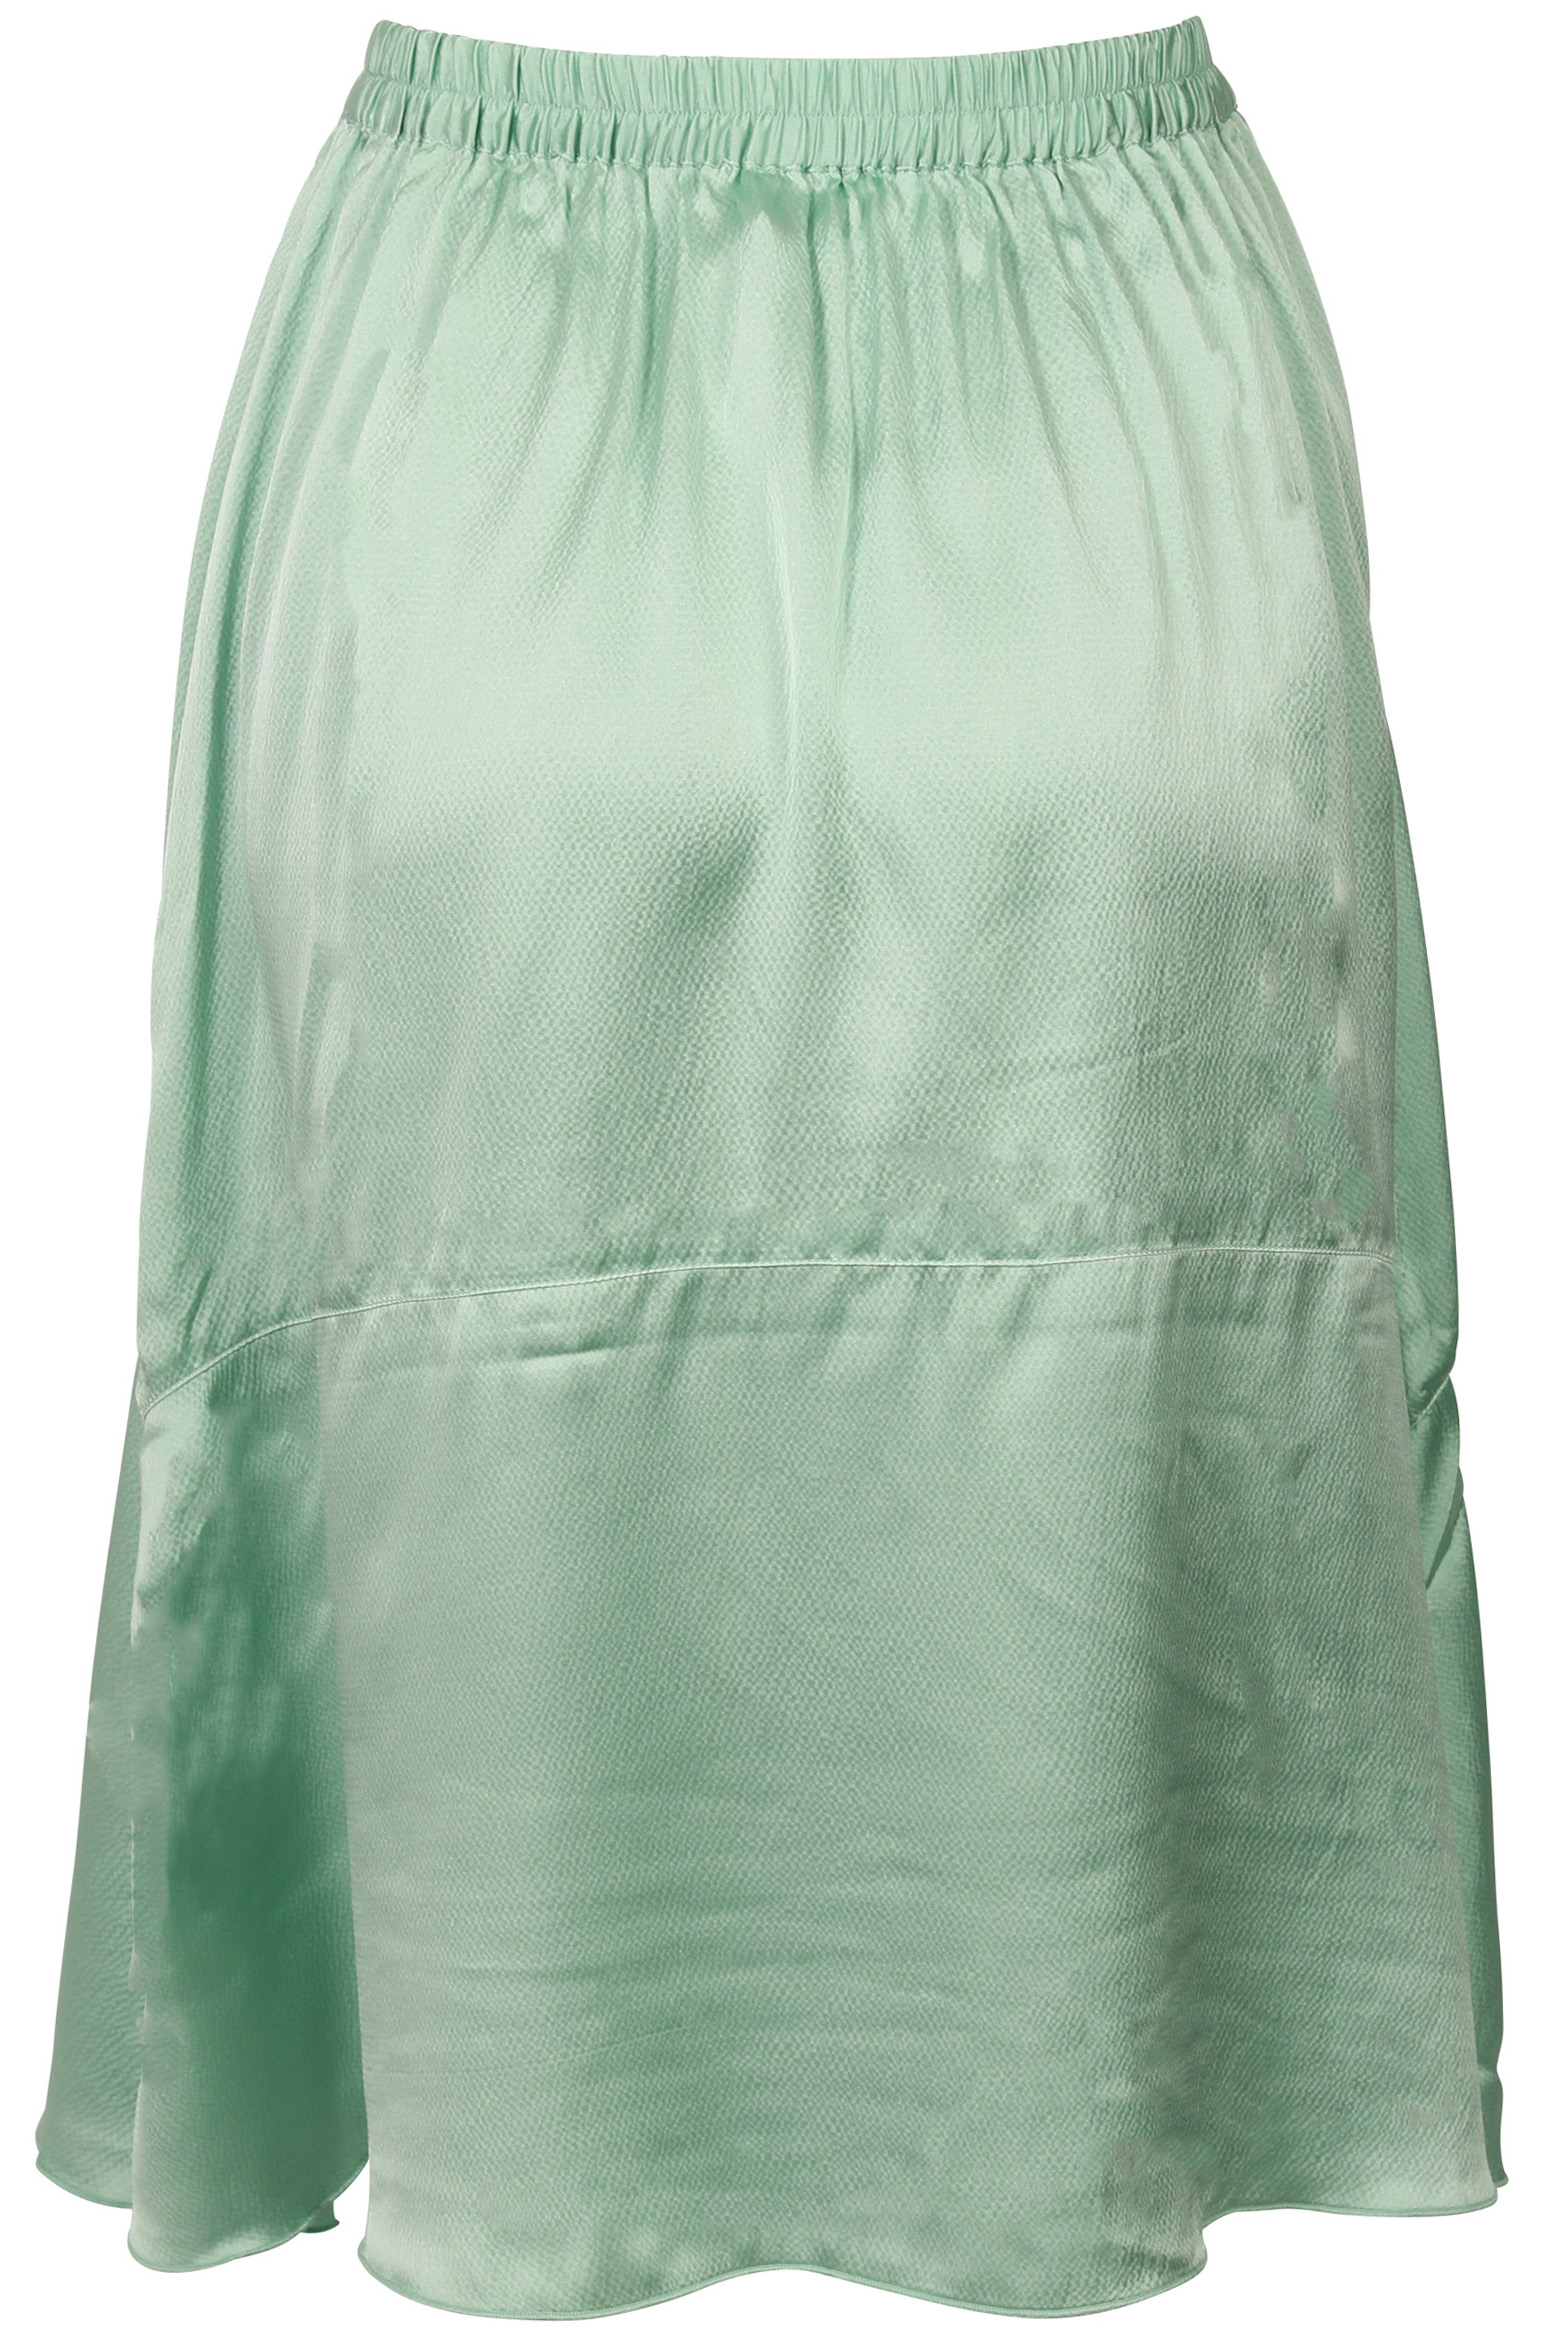 FWSS Skirt Lisbet Jade Green S